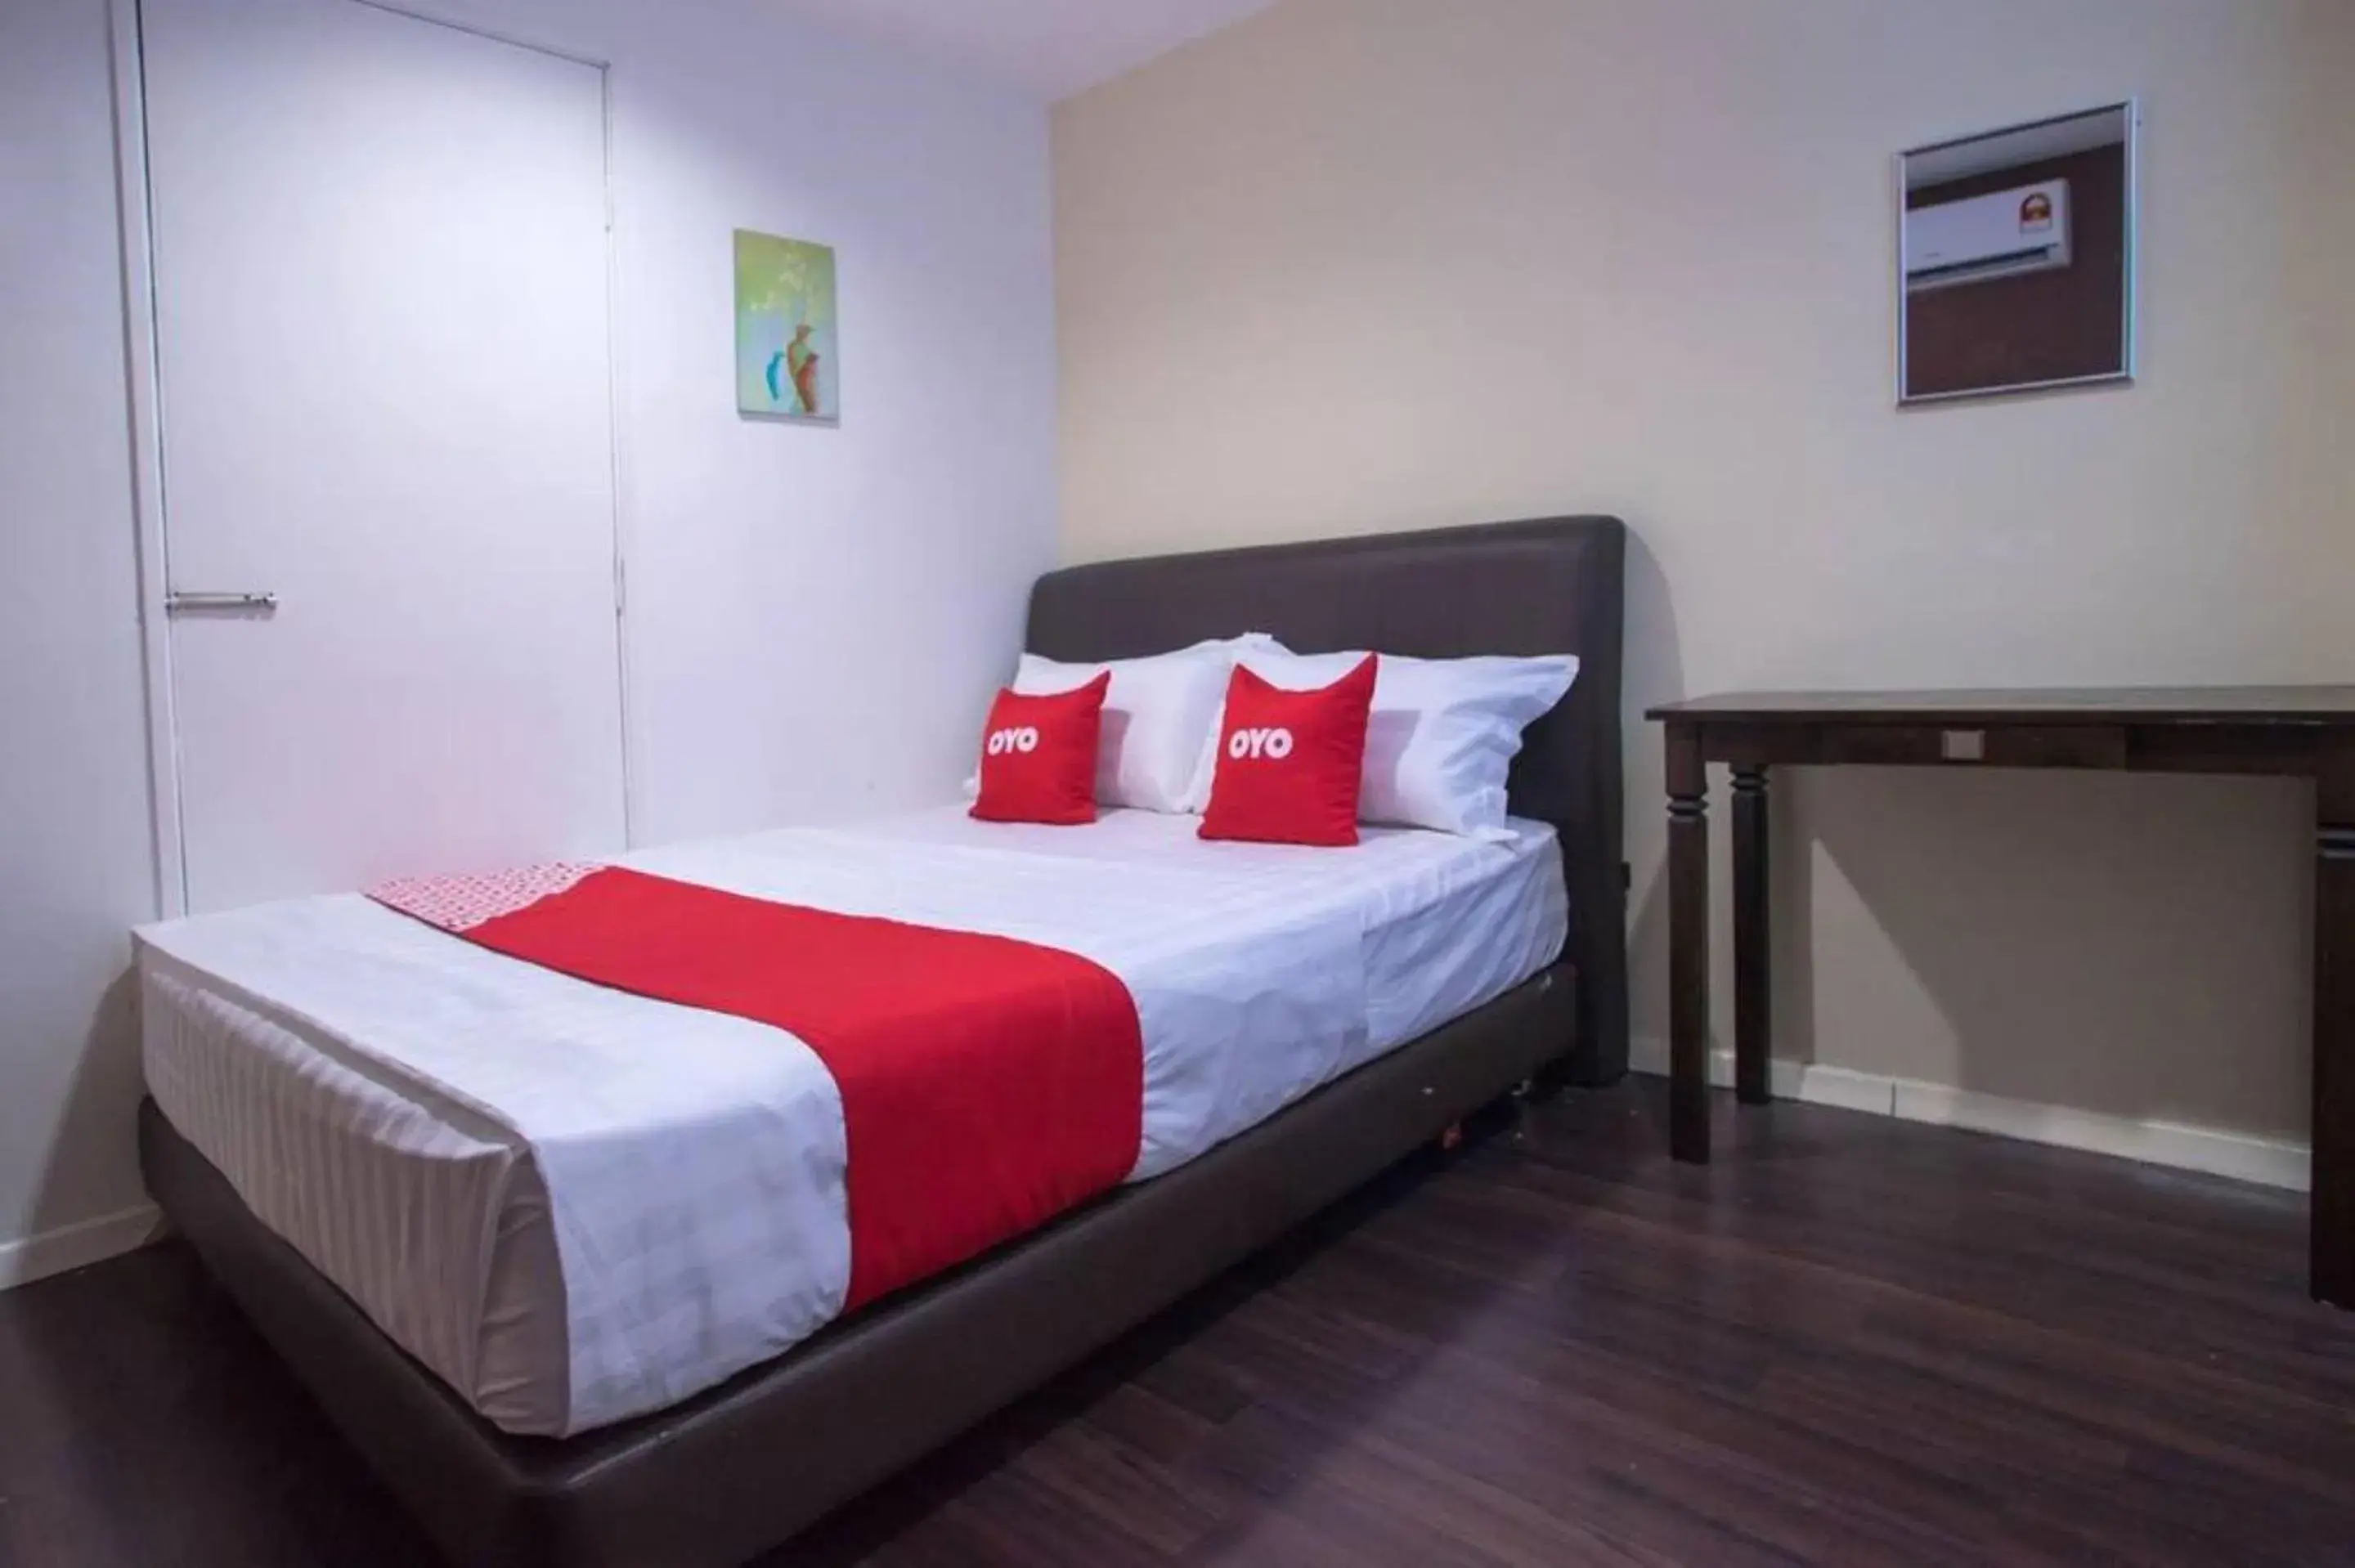 Bedroom, Bed in OYO 90281 Hotel Taj seksyen 13